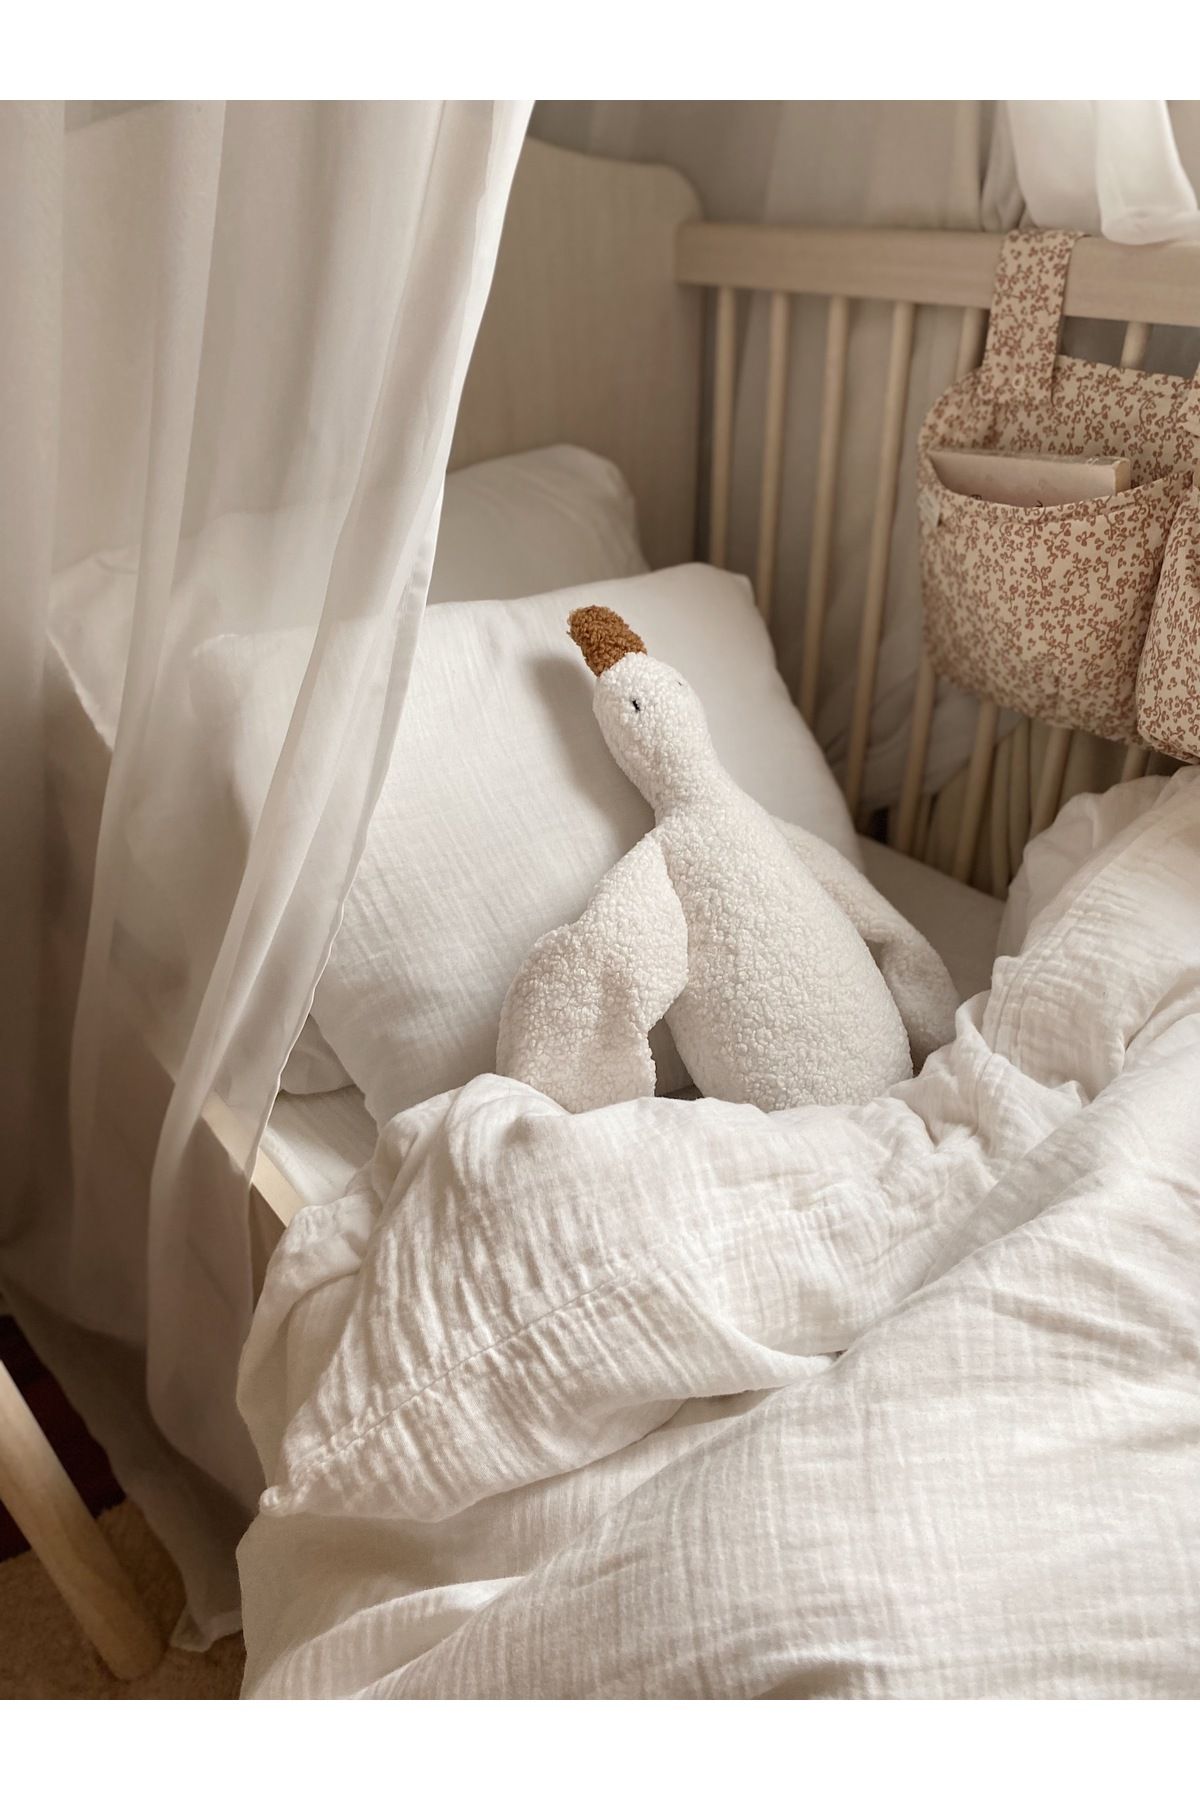 bohemoon Sevimli Ördek Teddy Bebek Çocuk Uyku Arkadaşı Naturel Beyaz/Camel